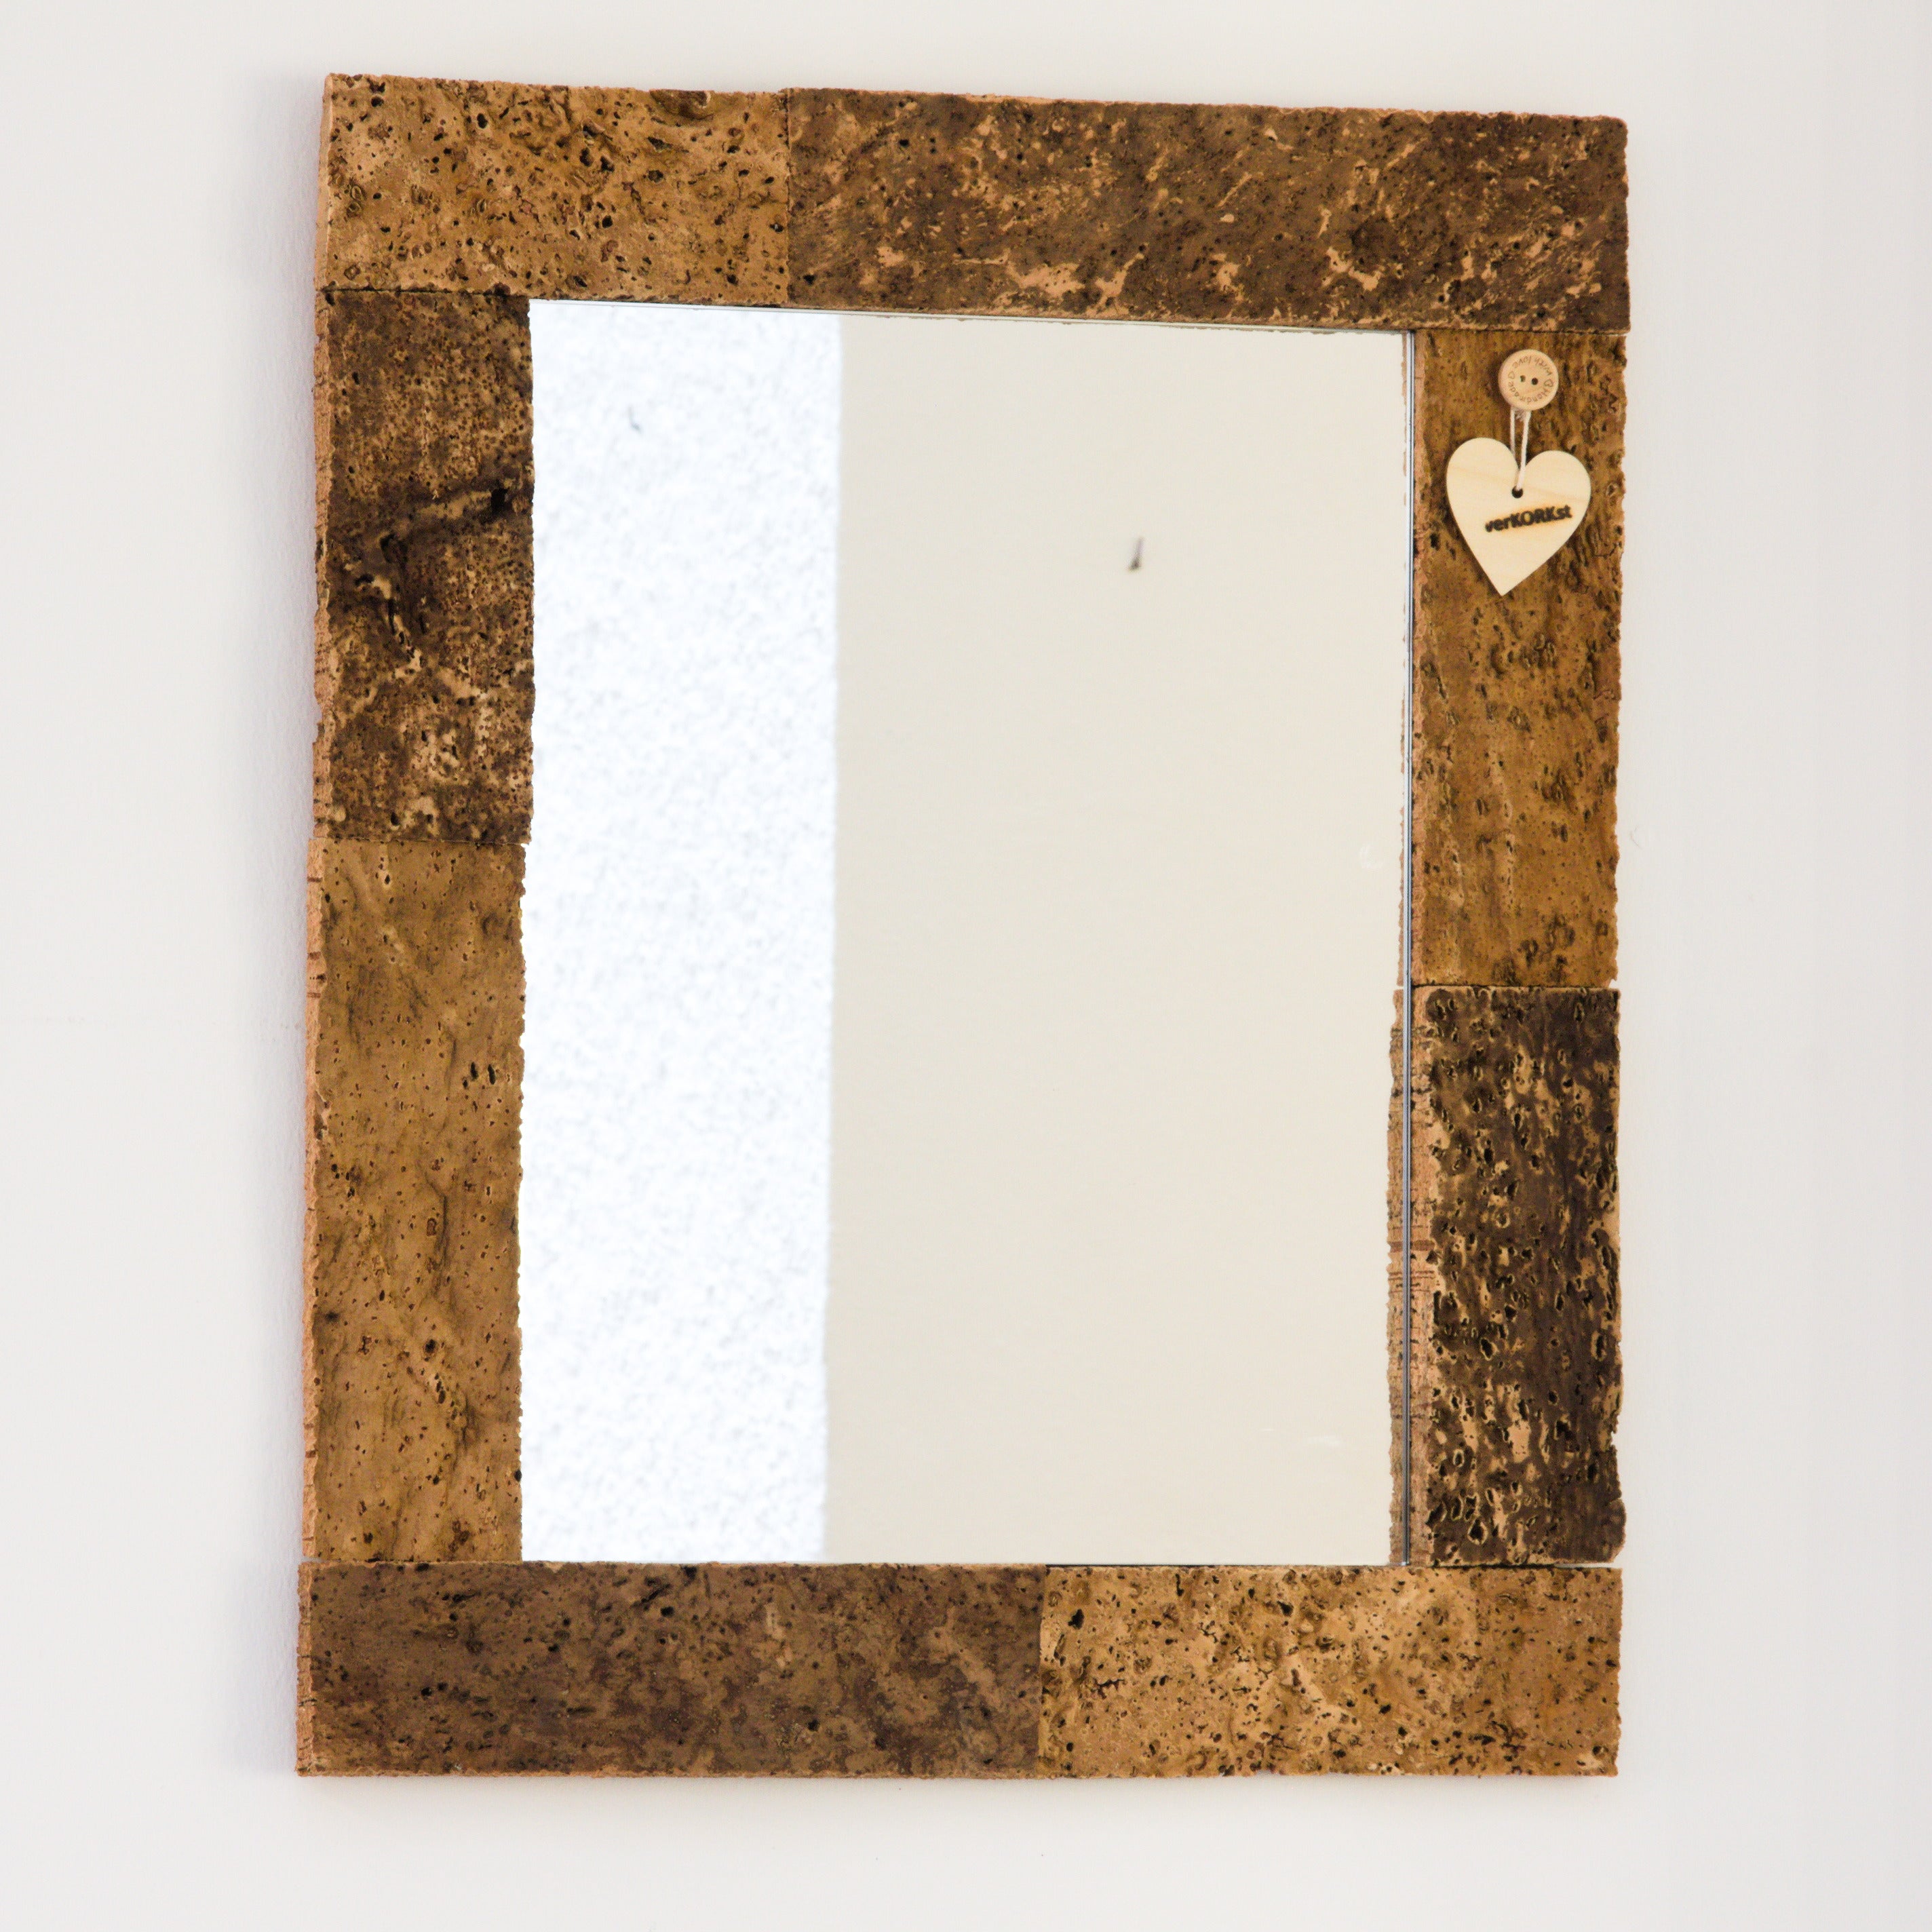 verKORKst Premium Wandspiegel aus Kork * rustikaler Holzspiegel für Toilette, WC, Bad * Vintage Spiegel im Landhausstil * Hängespiegel